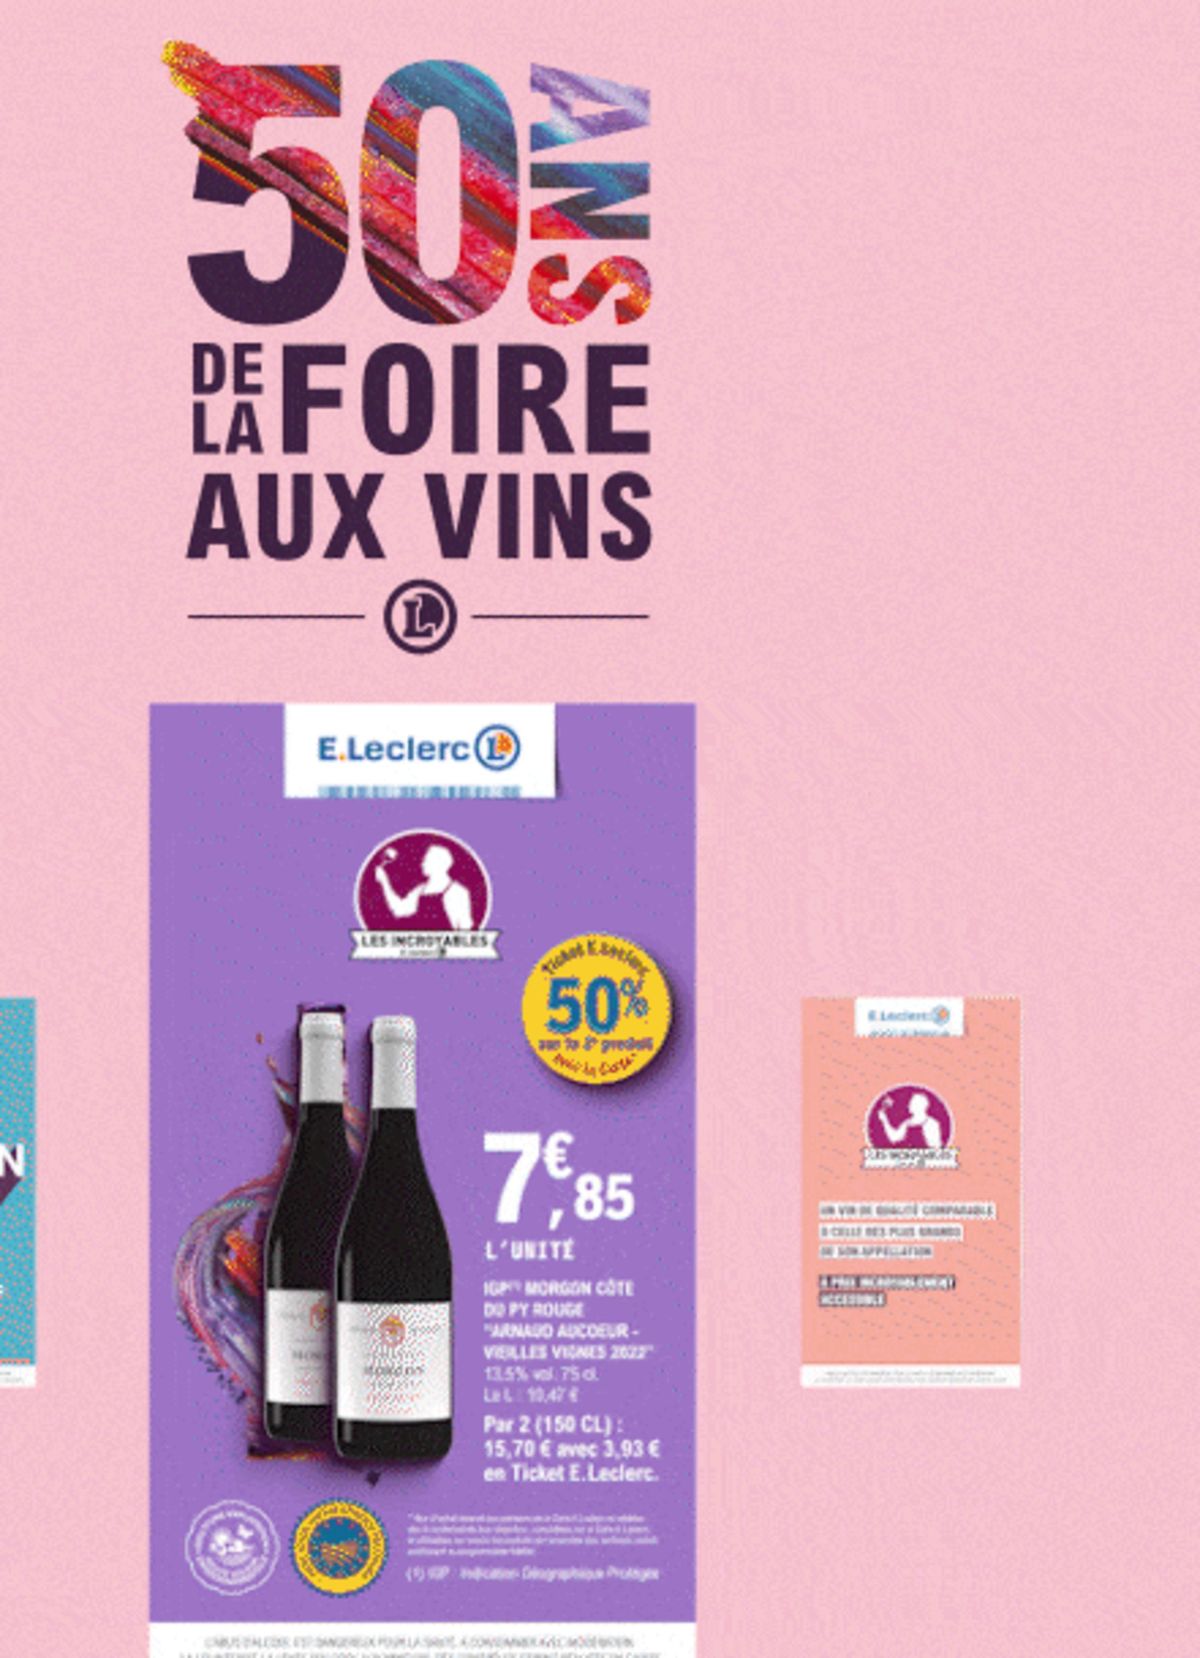 Catalogue Foire Aux Vins - Mixte, page 00346